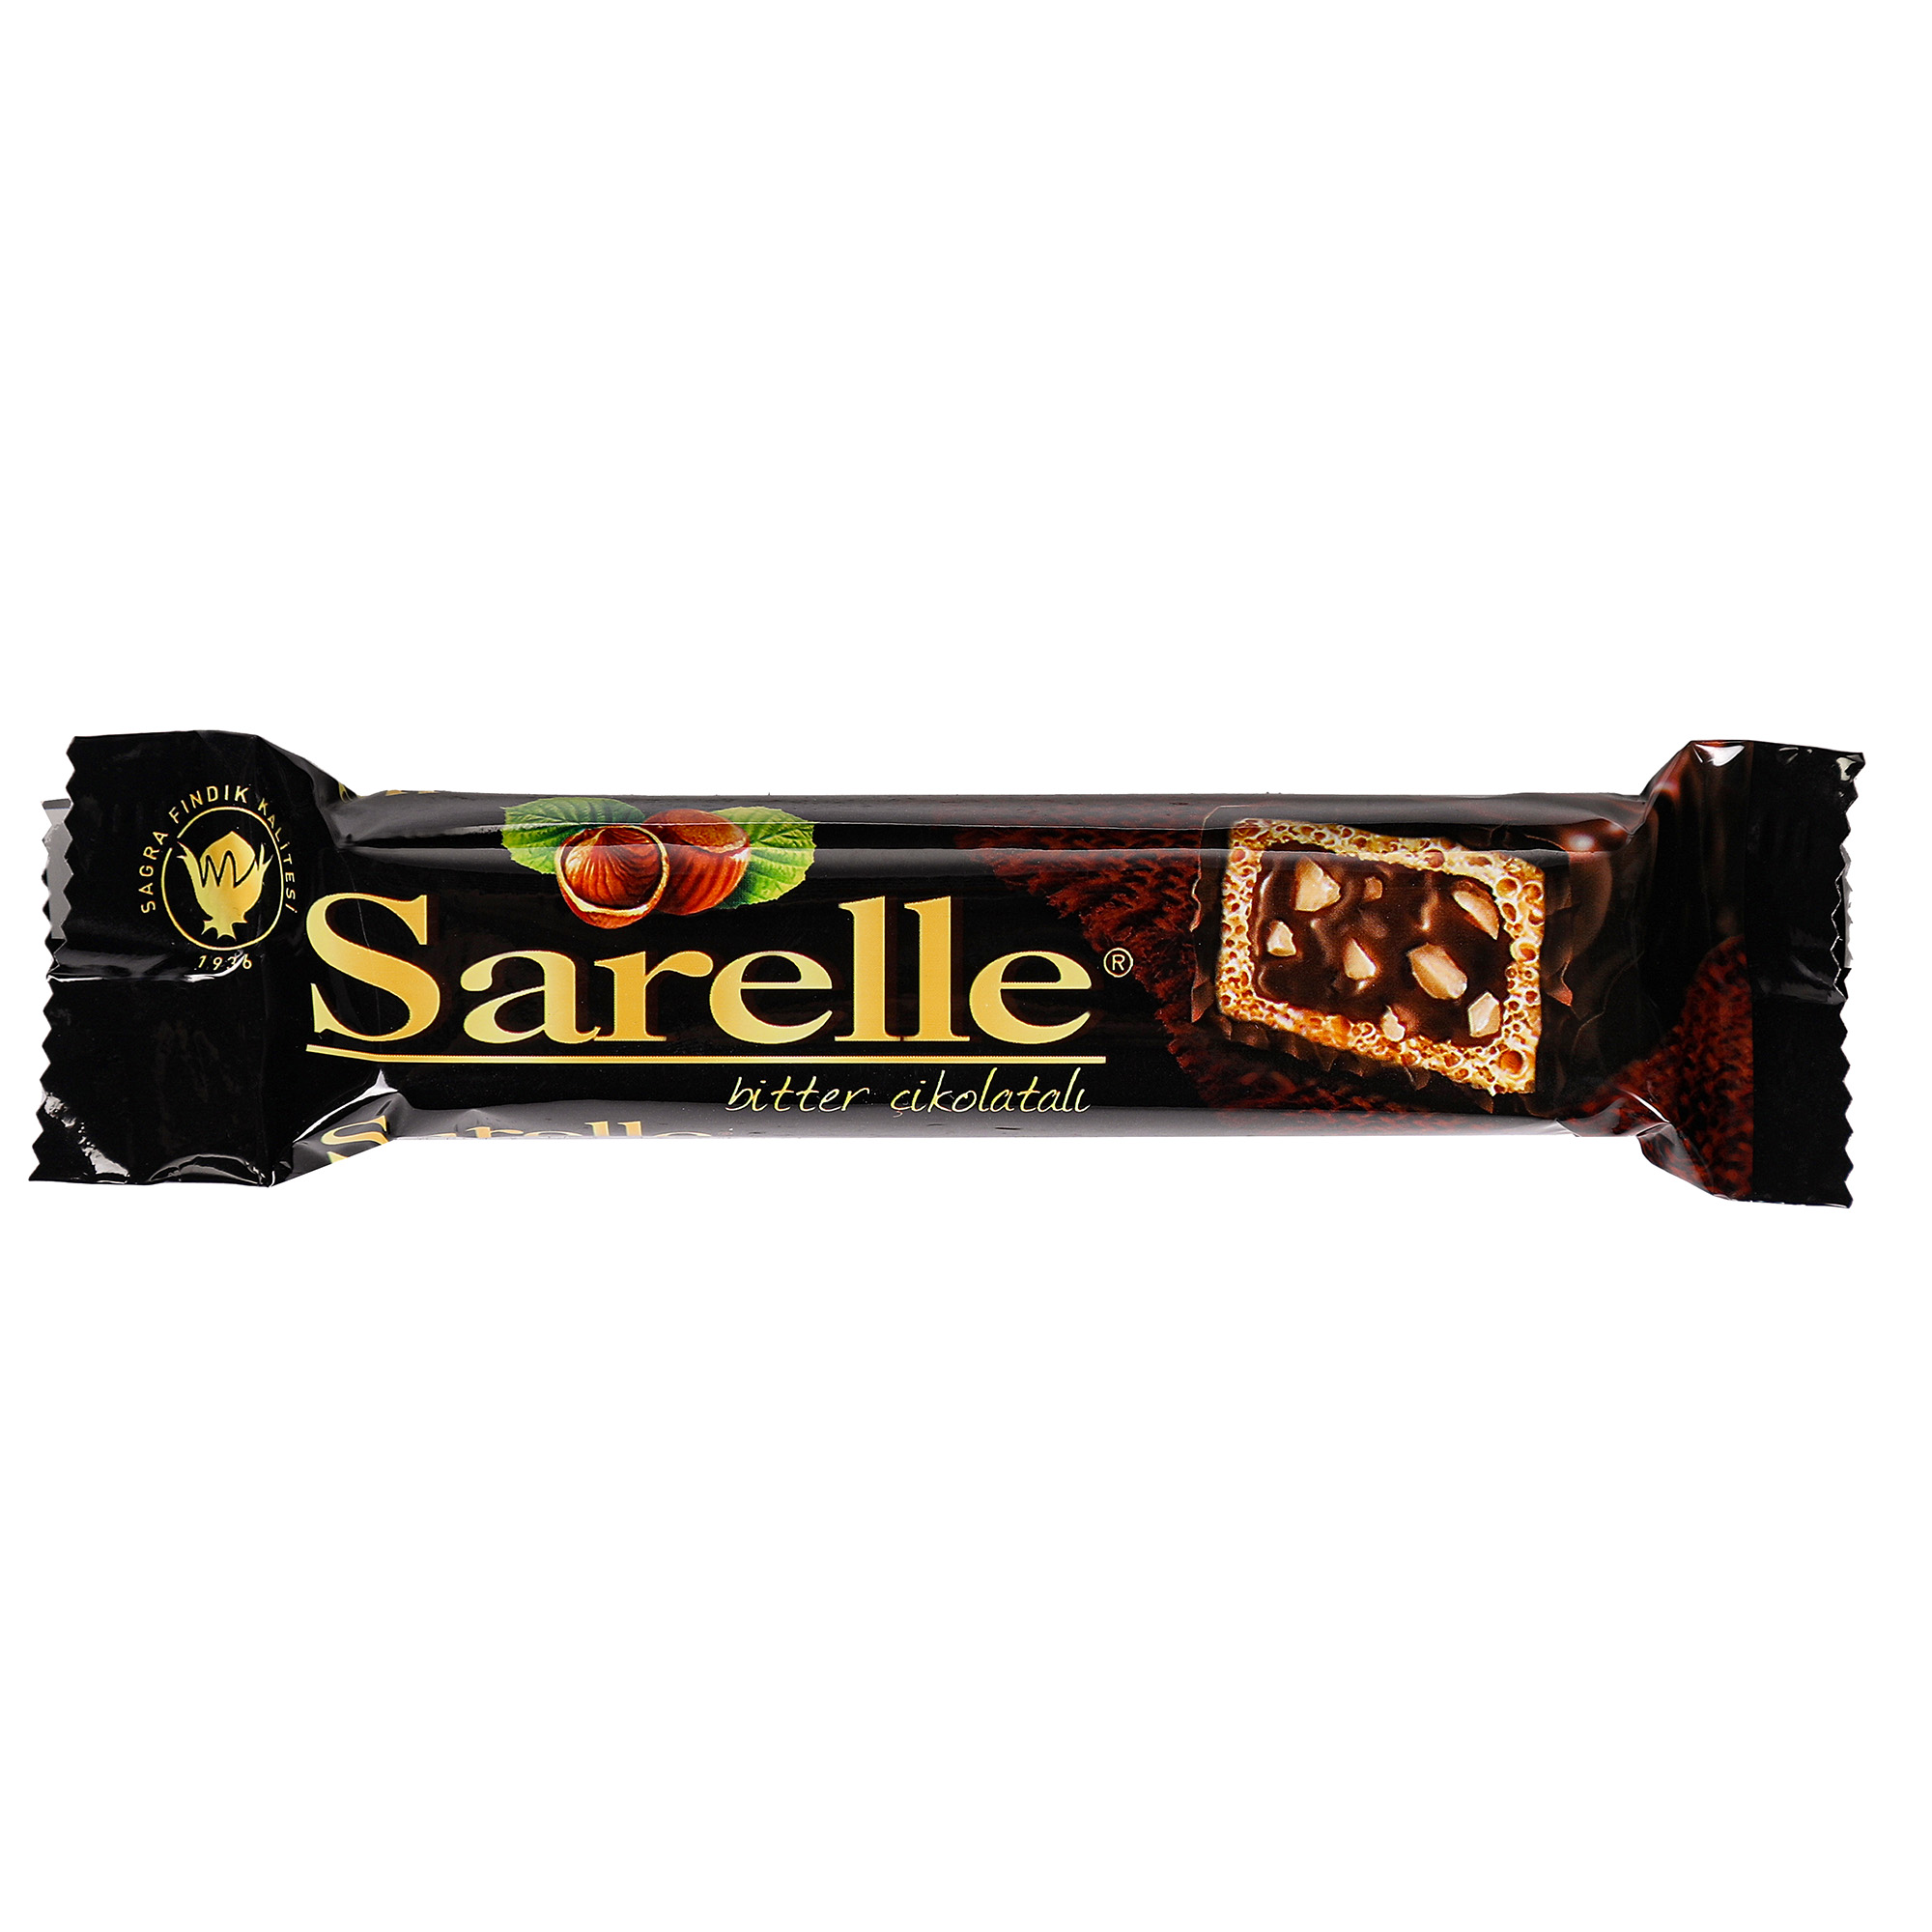 Вафли Sarelle с орехом и шоколадынм кремом в темном шоколаде, 33 г вафли loacker хрустящие с лесным орехом 175 гр